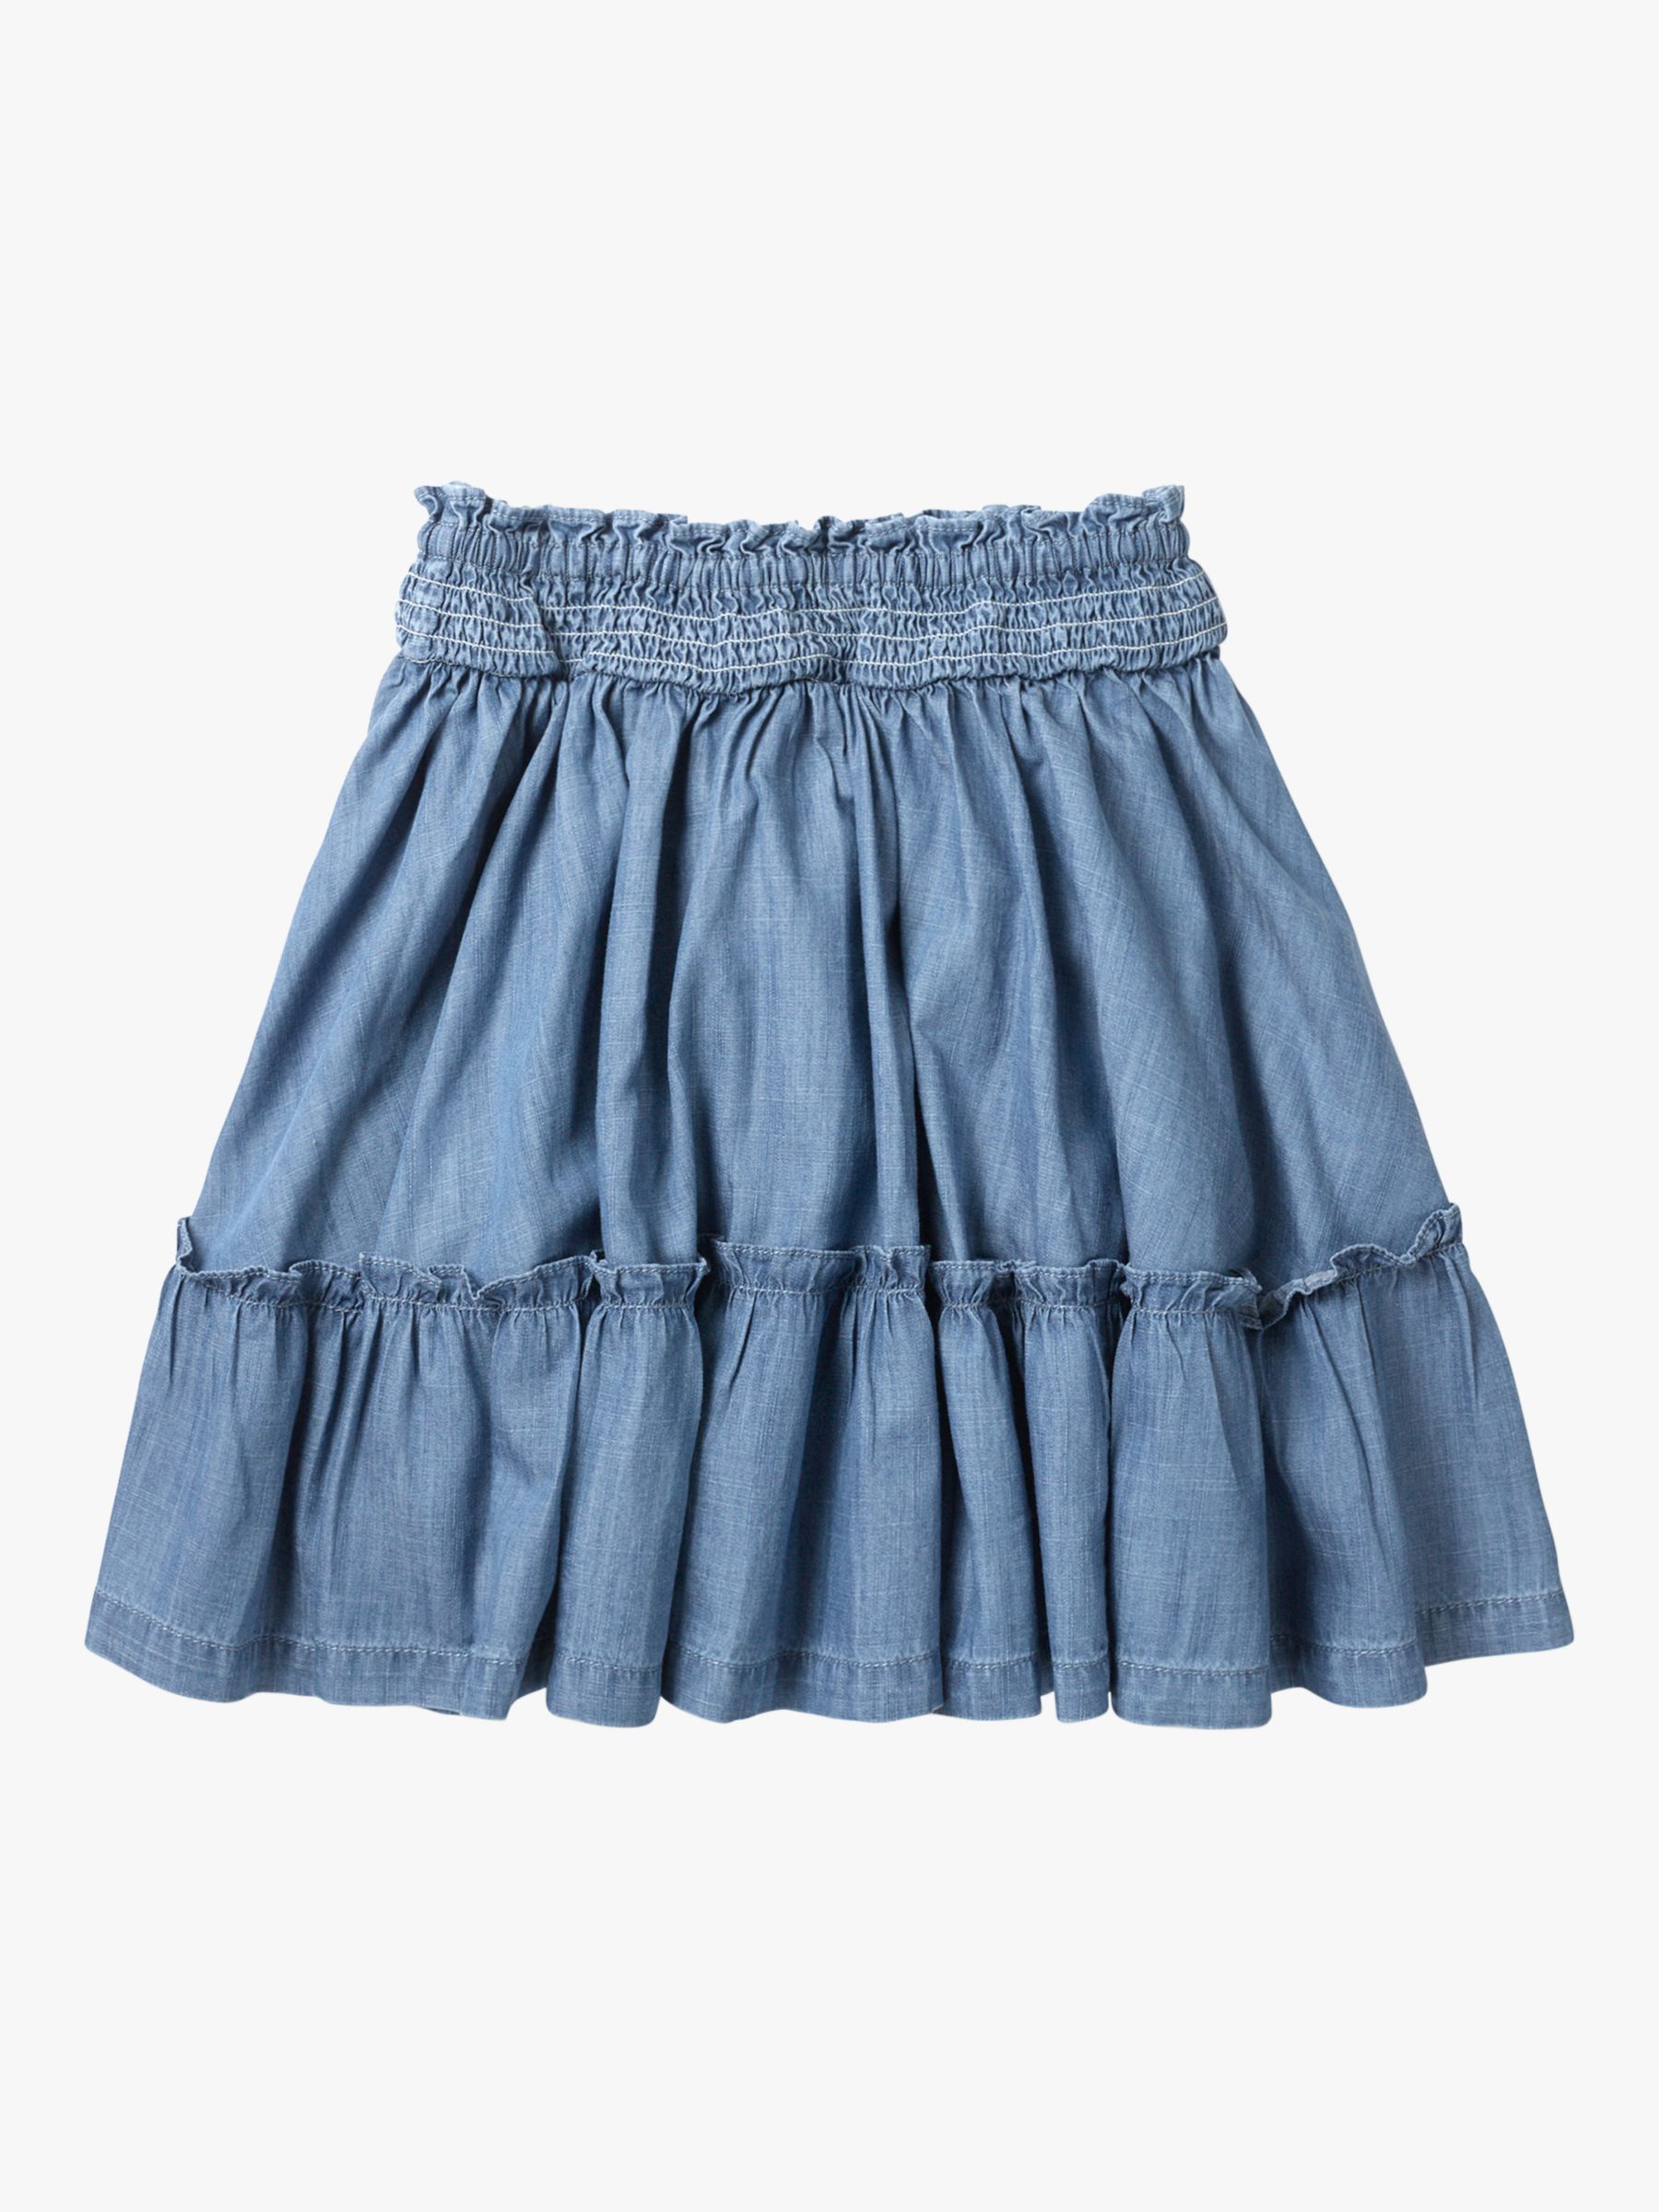 Mini Boden Girls' Denim Ruffle Skirt, Blue at John Lewis & Partners